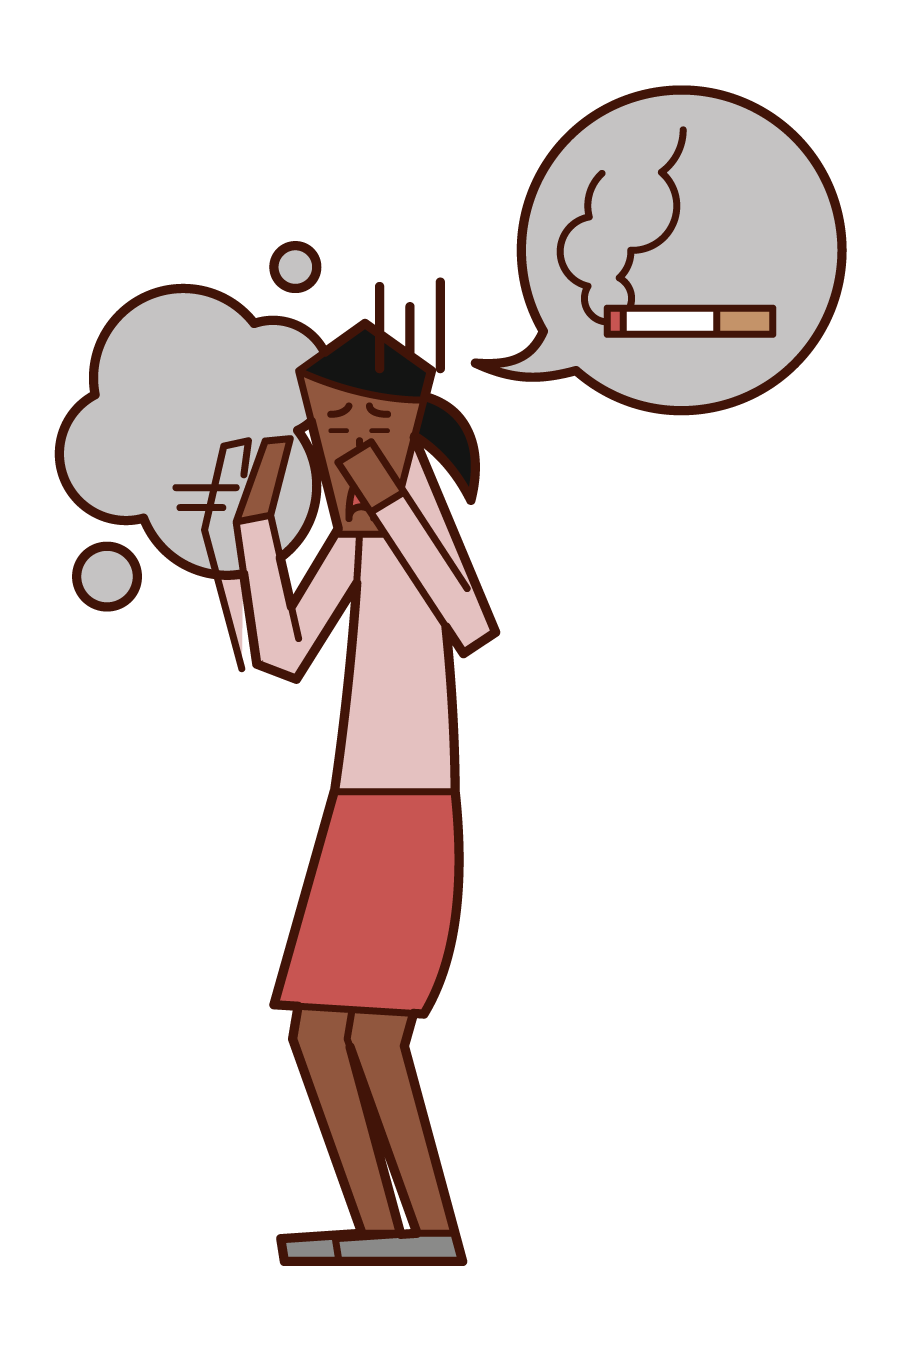 タバコの煙を嫌がる人 女性 のイラスト フリーイラスト素材集 Kukukeke